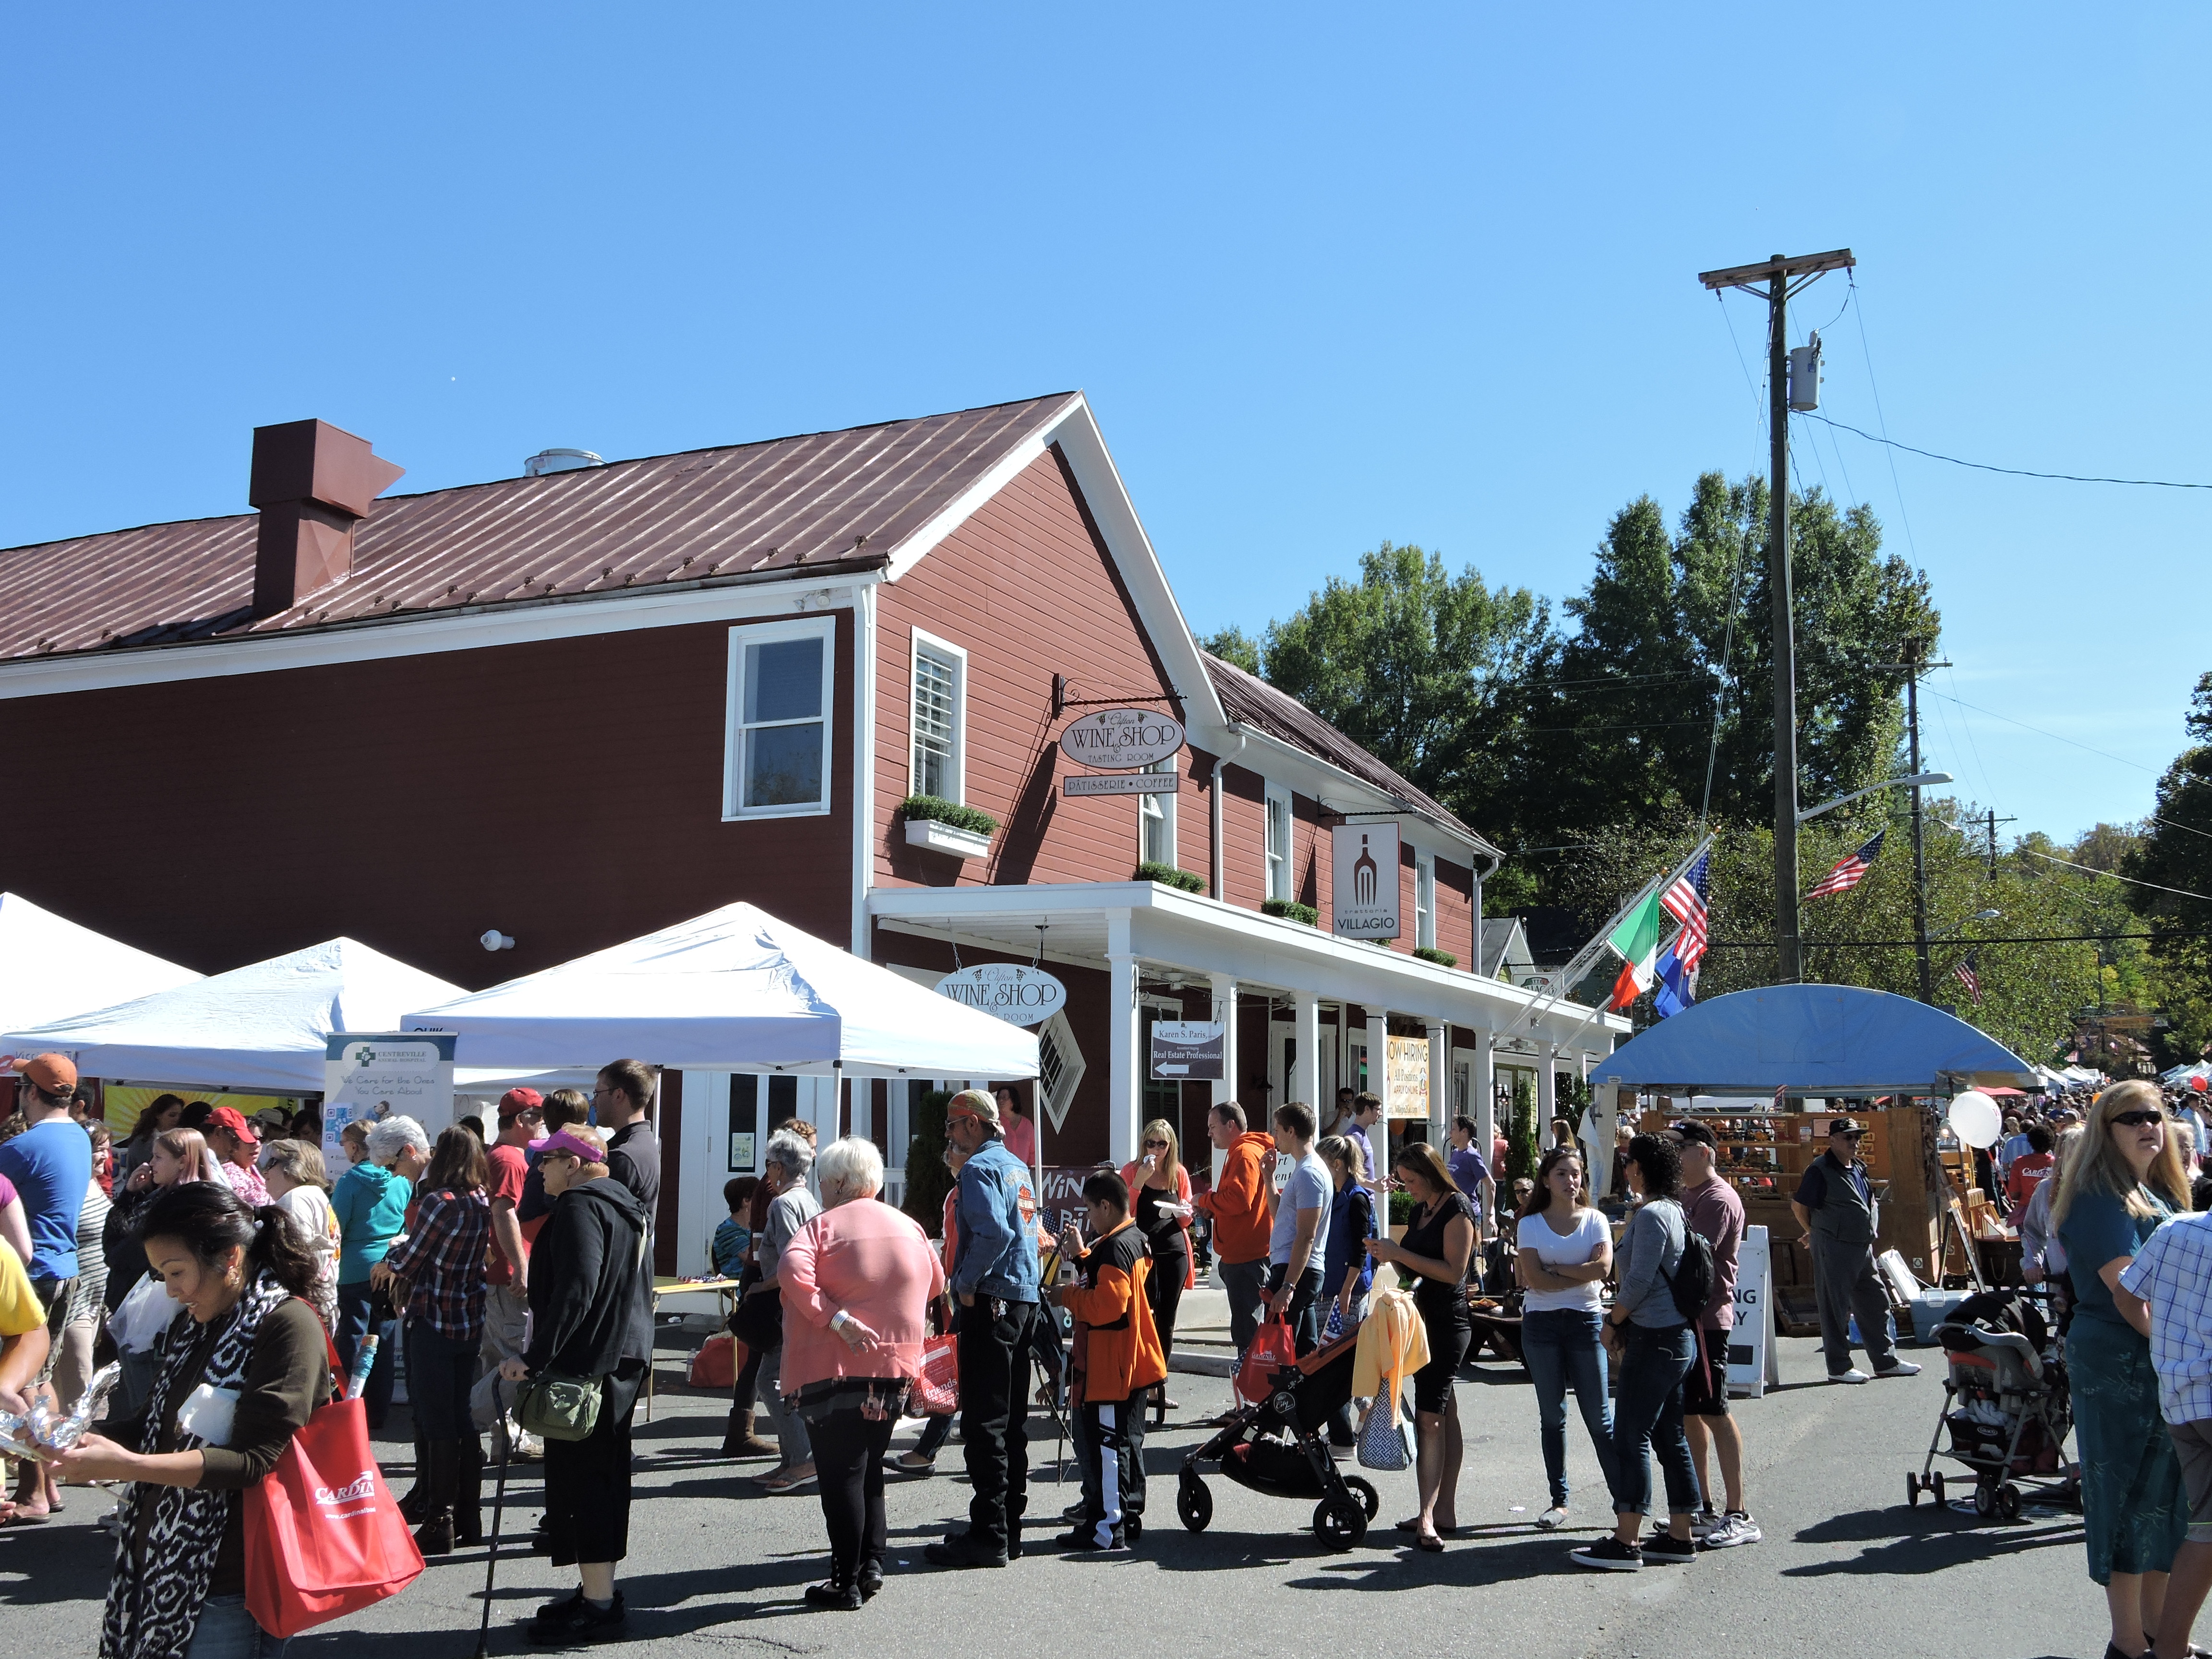 Clifton Day Fall Festival Discover Fairfax Virginia